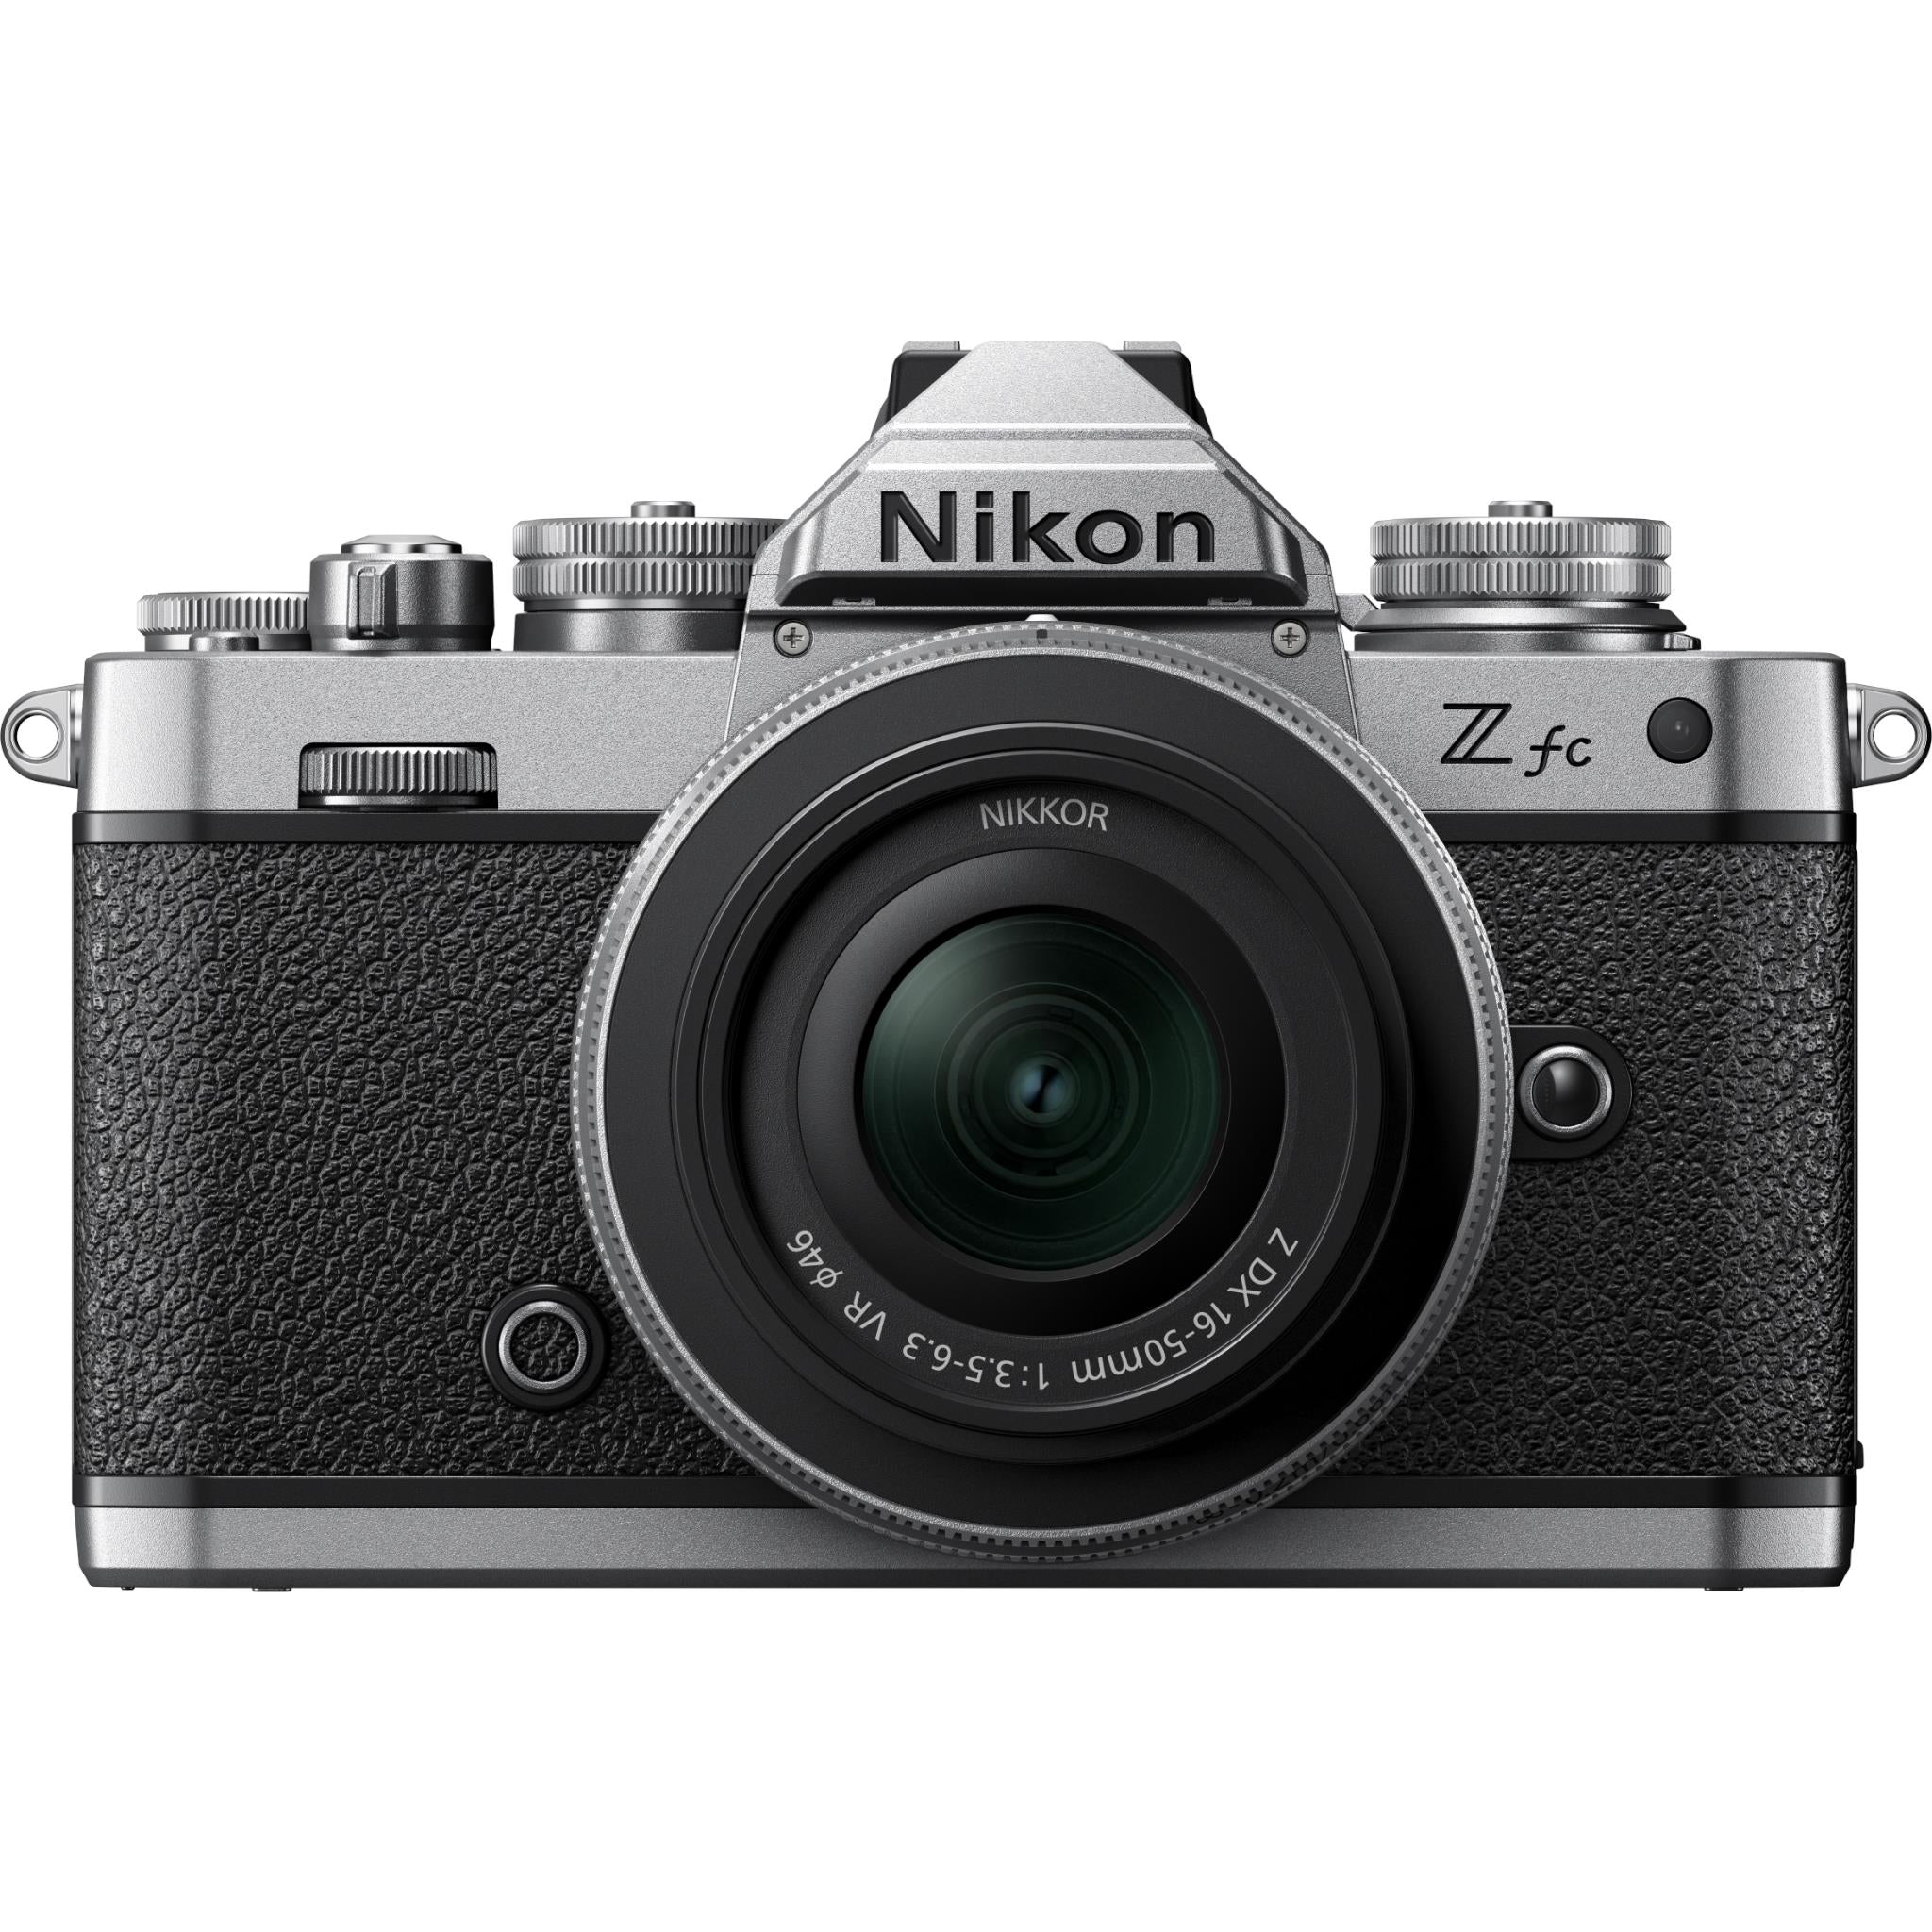 nikon z fc mirrorless camera with nikkor z 16-50mm lens (black)